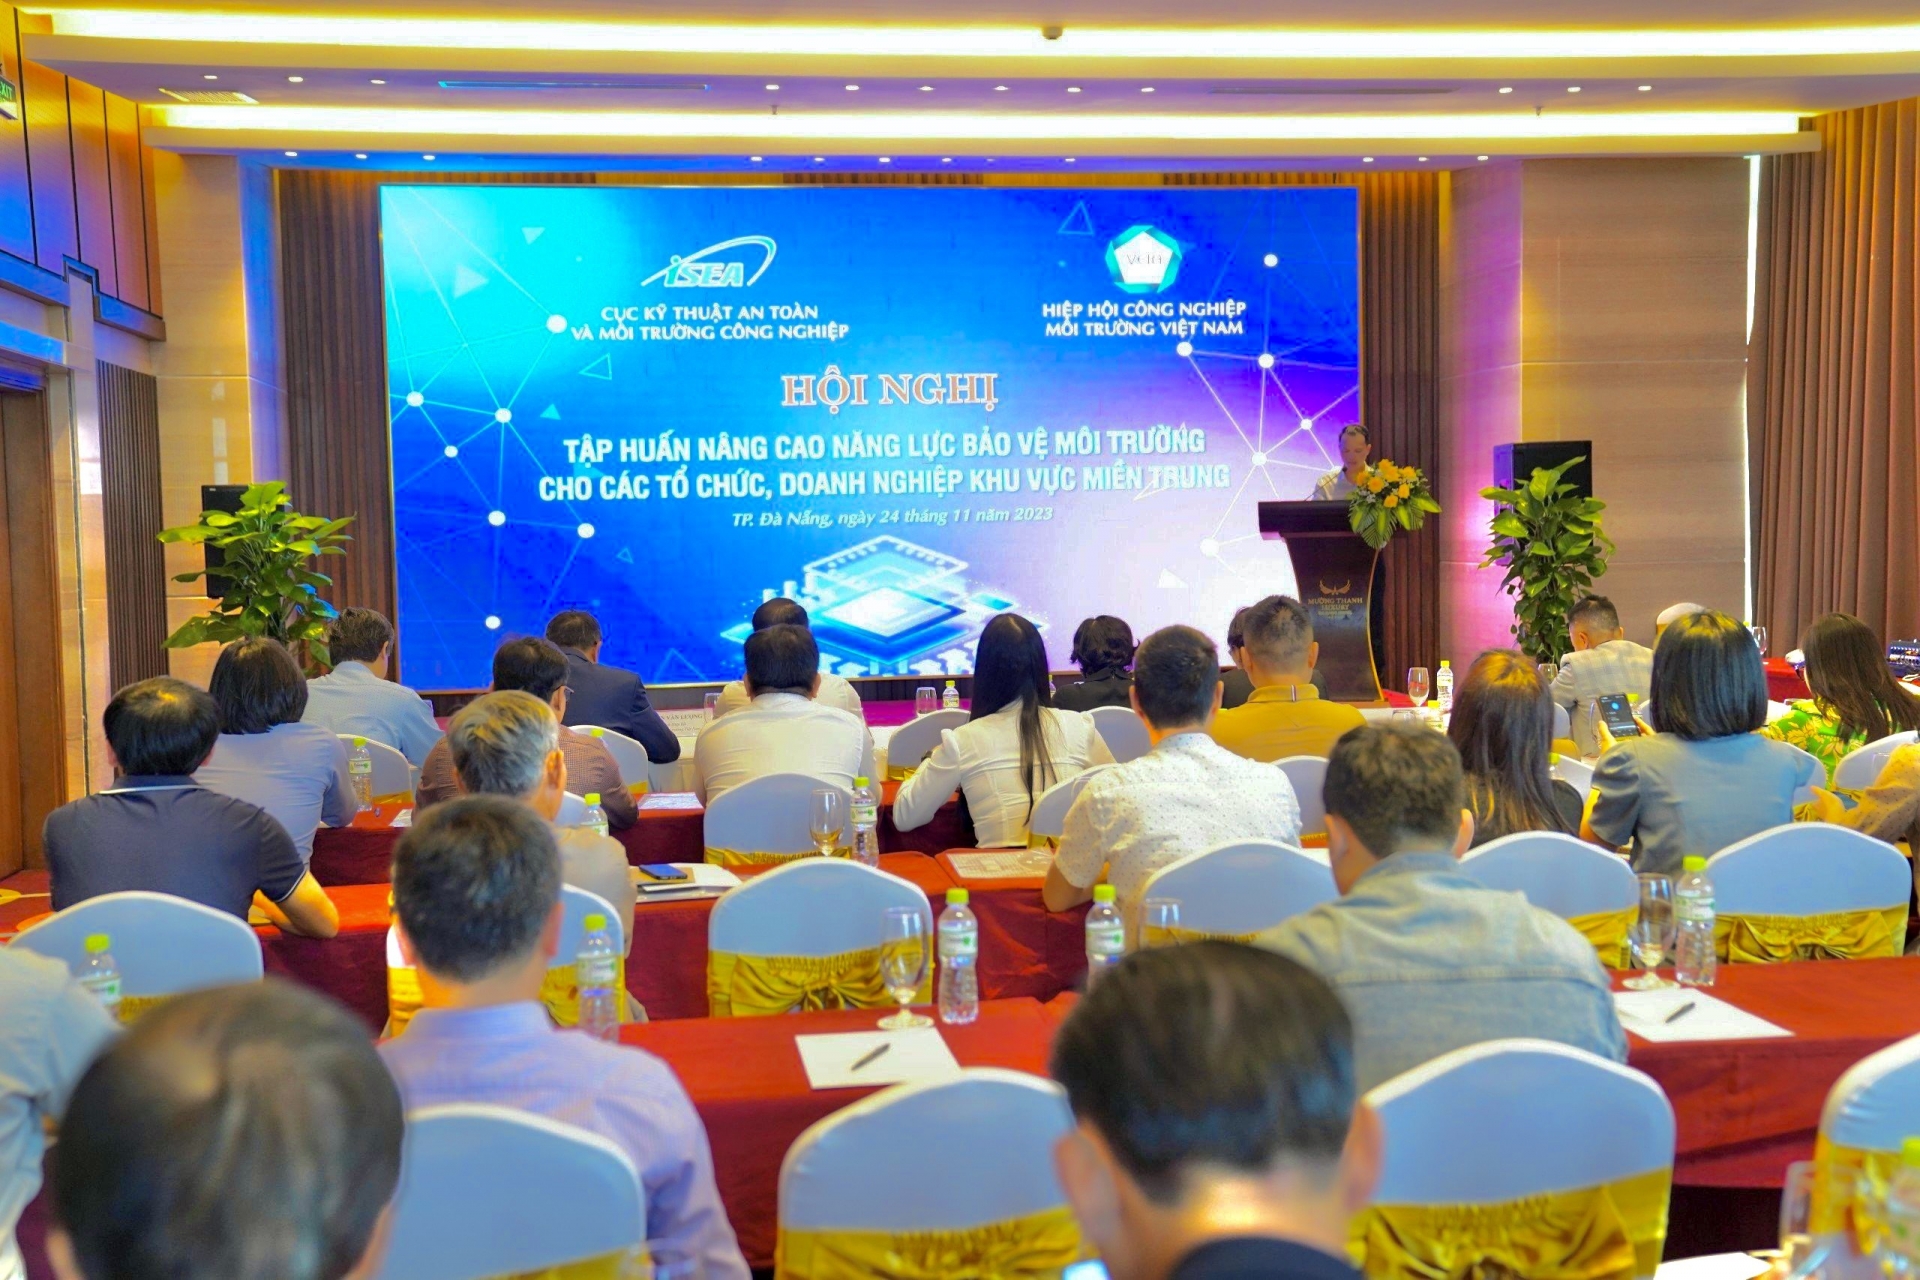 Ngày 24/11, tại thành phố Đà Nẵng, Cục kỹ thuật an toàn và Môi trường công nghiệp phối hợp với Hiệp hội Công nghiệp môi trường Việt Nam tổ chức thành công Hội nghị tập huấn “Nâng cao năng lực bảo vệ môi trường cho các cơ quan, doanh nghiệp khu vực miền Trung”.